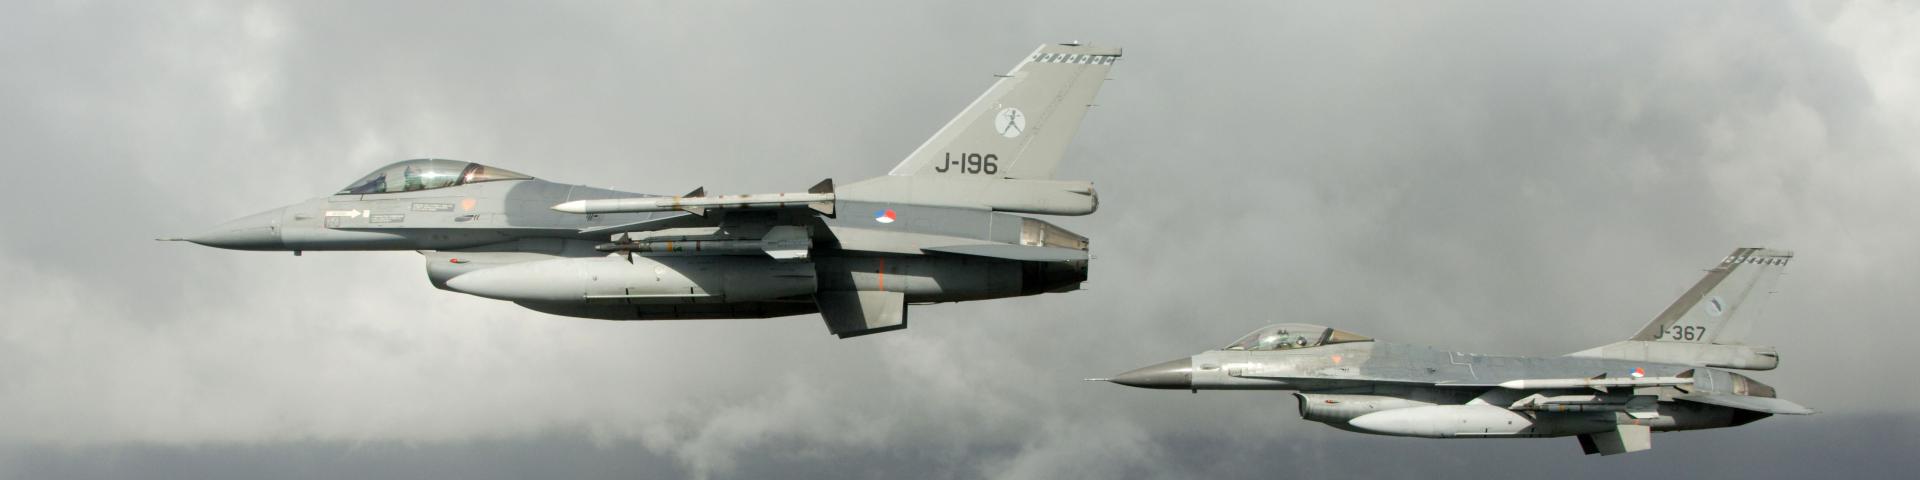 Foto van 2 F-16 jachtvliegtuigen in de lucht